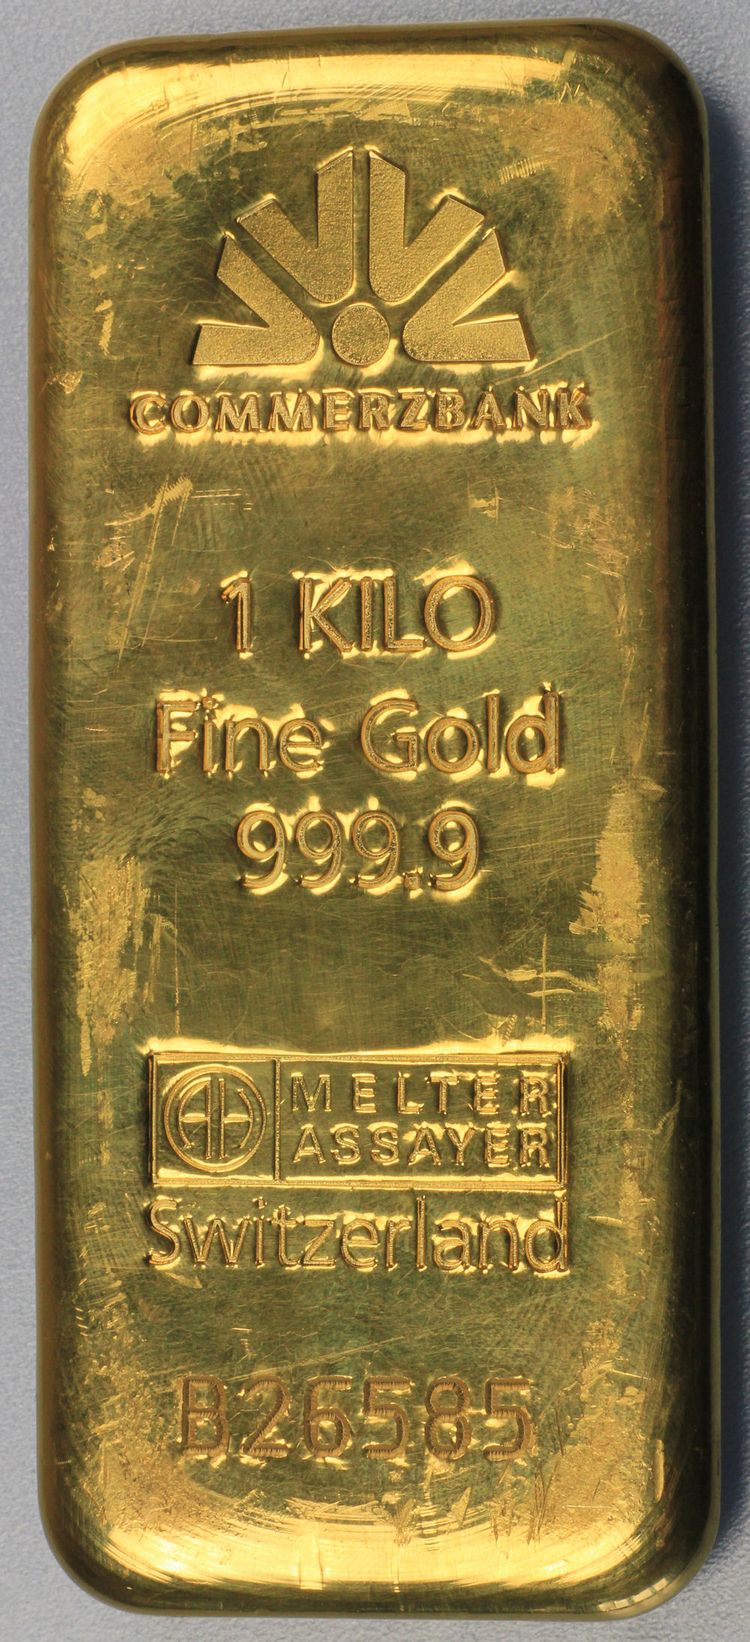 1000g Goldbarren der Commerzbank